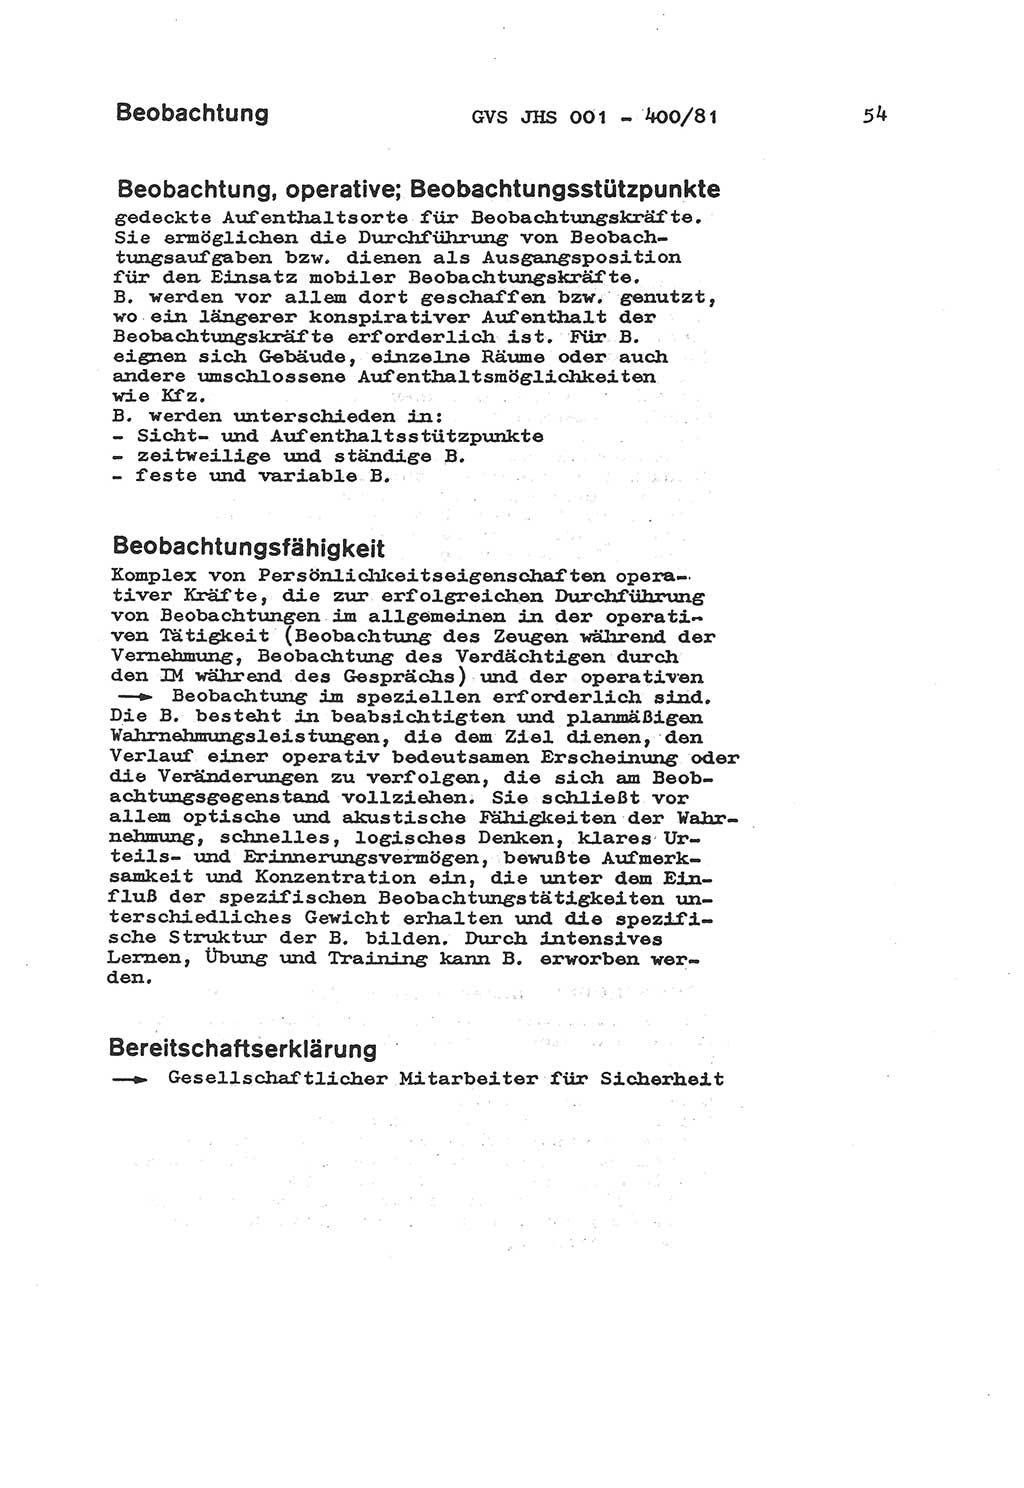 Wörterbuch der politisch-operativen Arbeit, Ministerium für Staatssicherheit (MfS) [Deutsche Demokratische Republik (DDR)], Juristische Hochschule (JHS), Geheime Verschlußsache (GVS) o001-400/81, Potsdam 1985, Blatt 54 (Wb. pol.-op. Arb. MfS DDR JHS GVS o001-400/81 1985, Bl. 54)